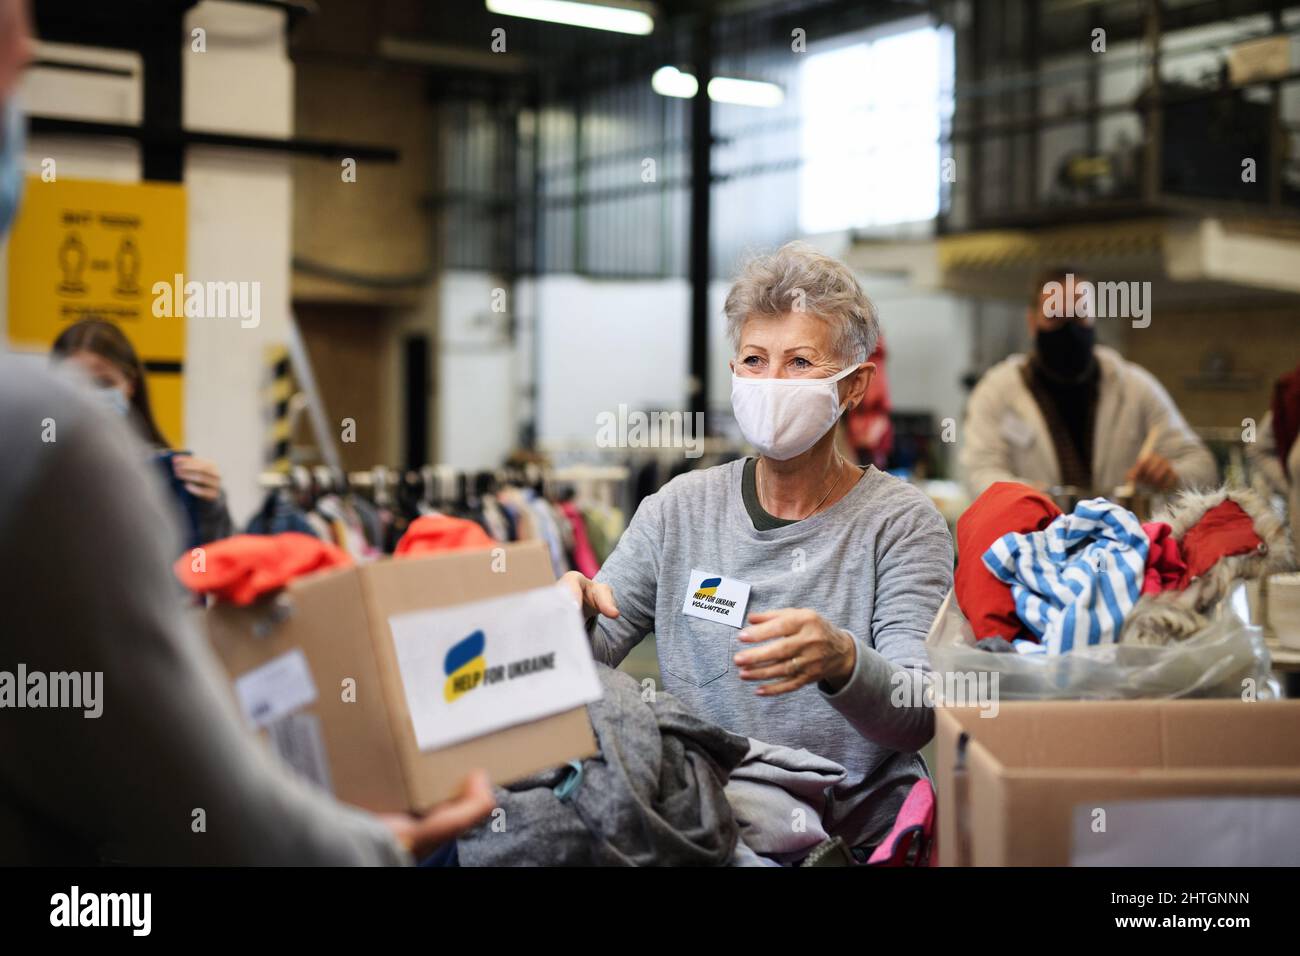 Volontaires collectant des dons pour les besoins des migrants ukrainiens, concept d'aide humanitaire. Banque D'Images